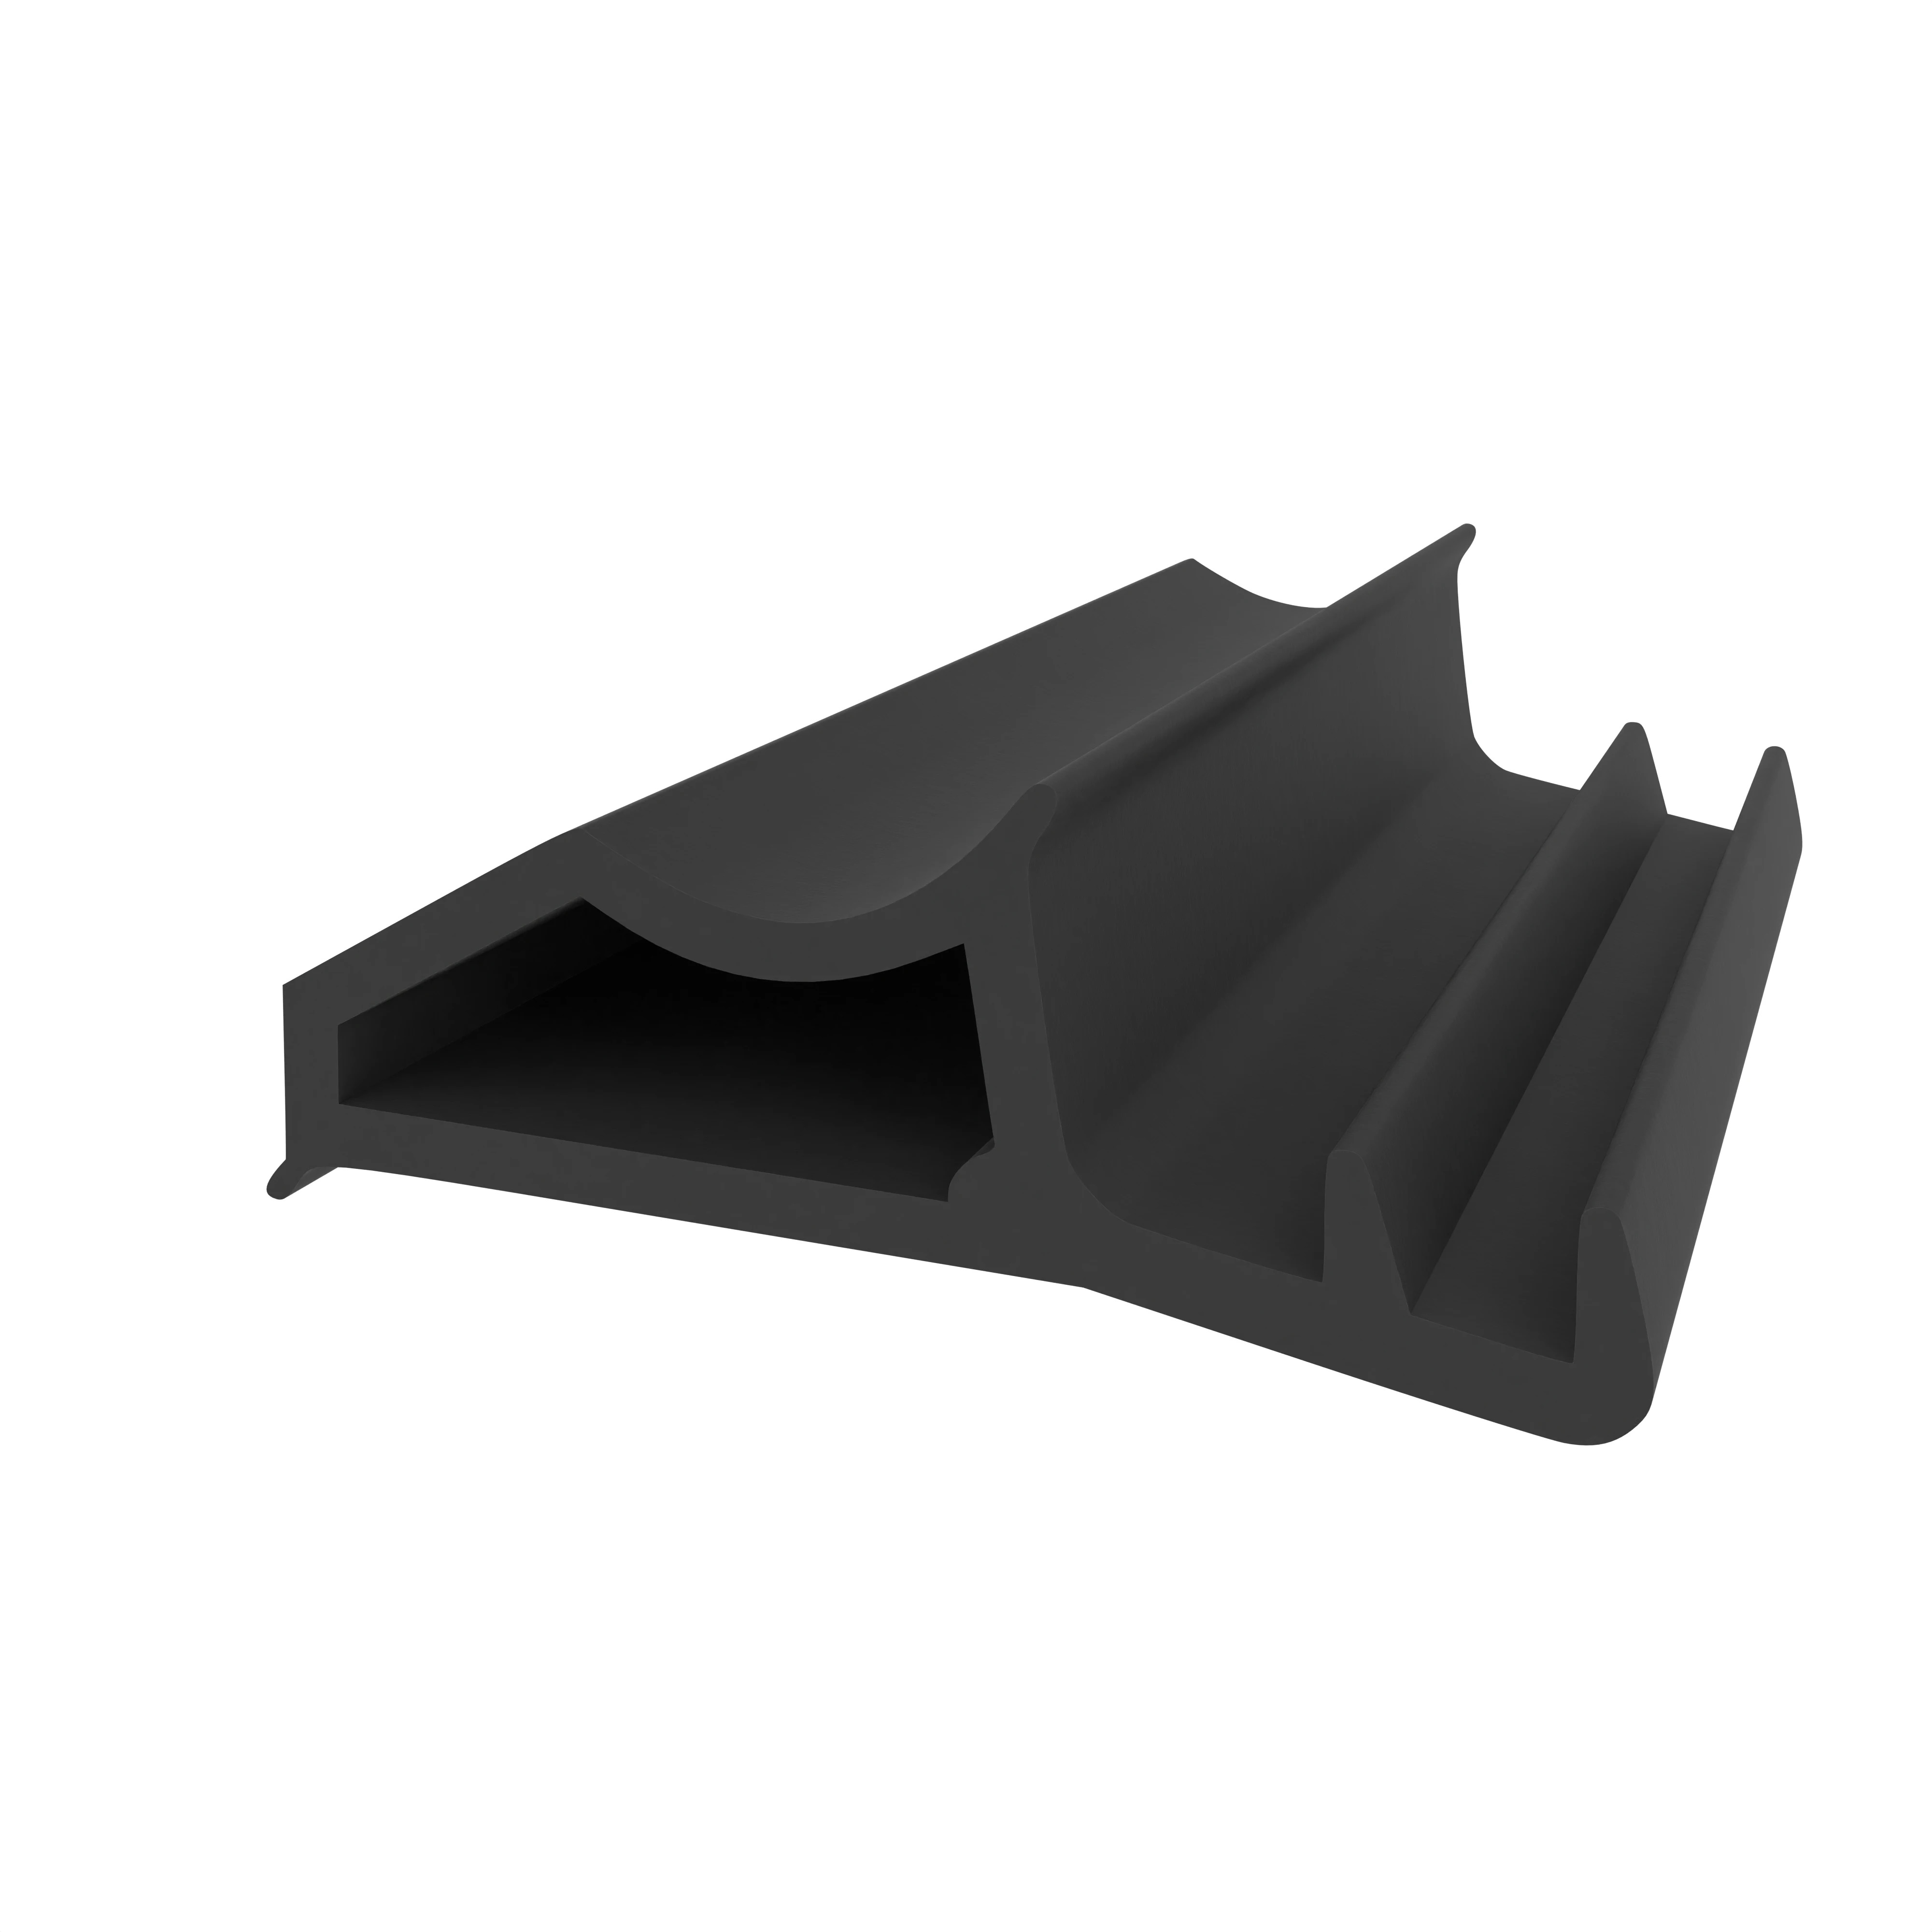 Stahlzargendichtung für seitliche Nut | 10 mm Höhe | Farbe: schwarz